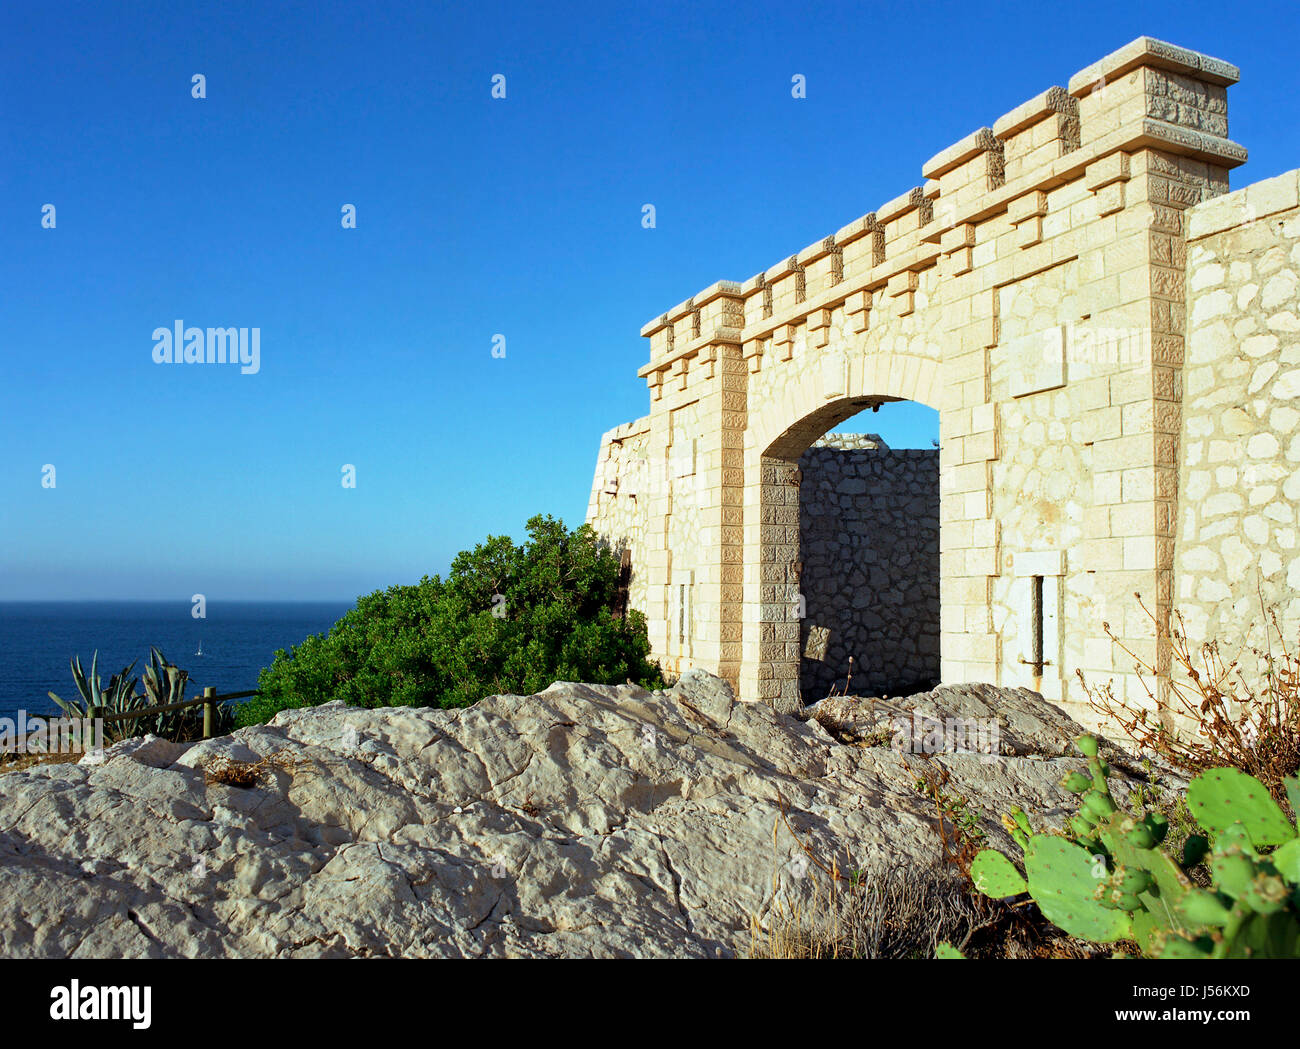 Obiettivo passaggio archgway gate gantry Francia fortezze edifici di Marsiglia shine Foto Stock